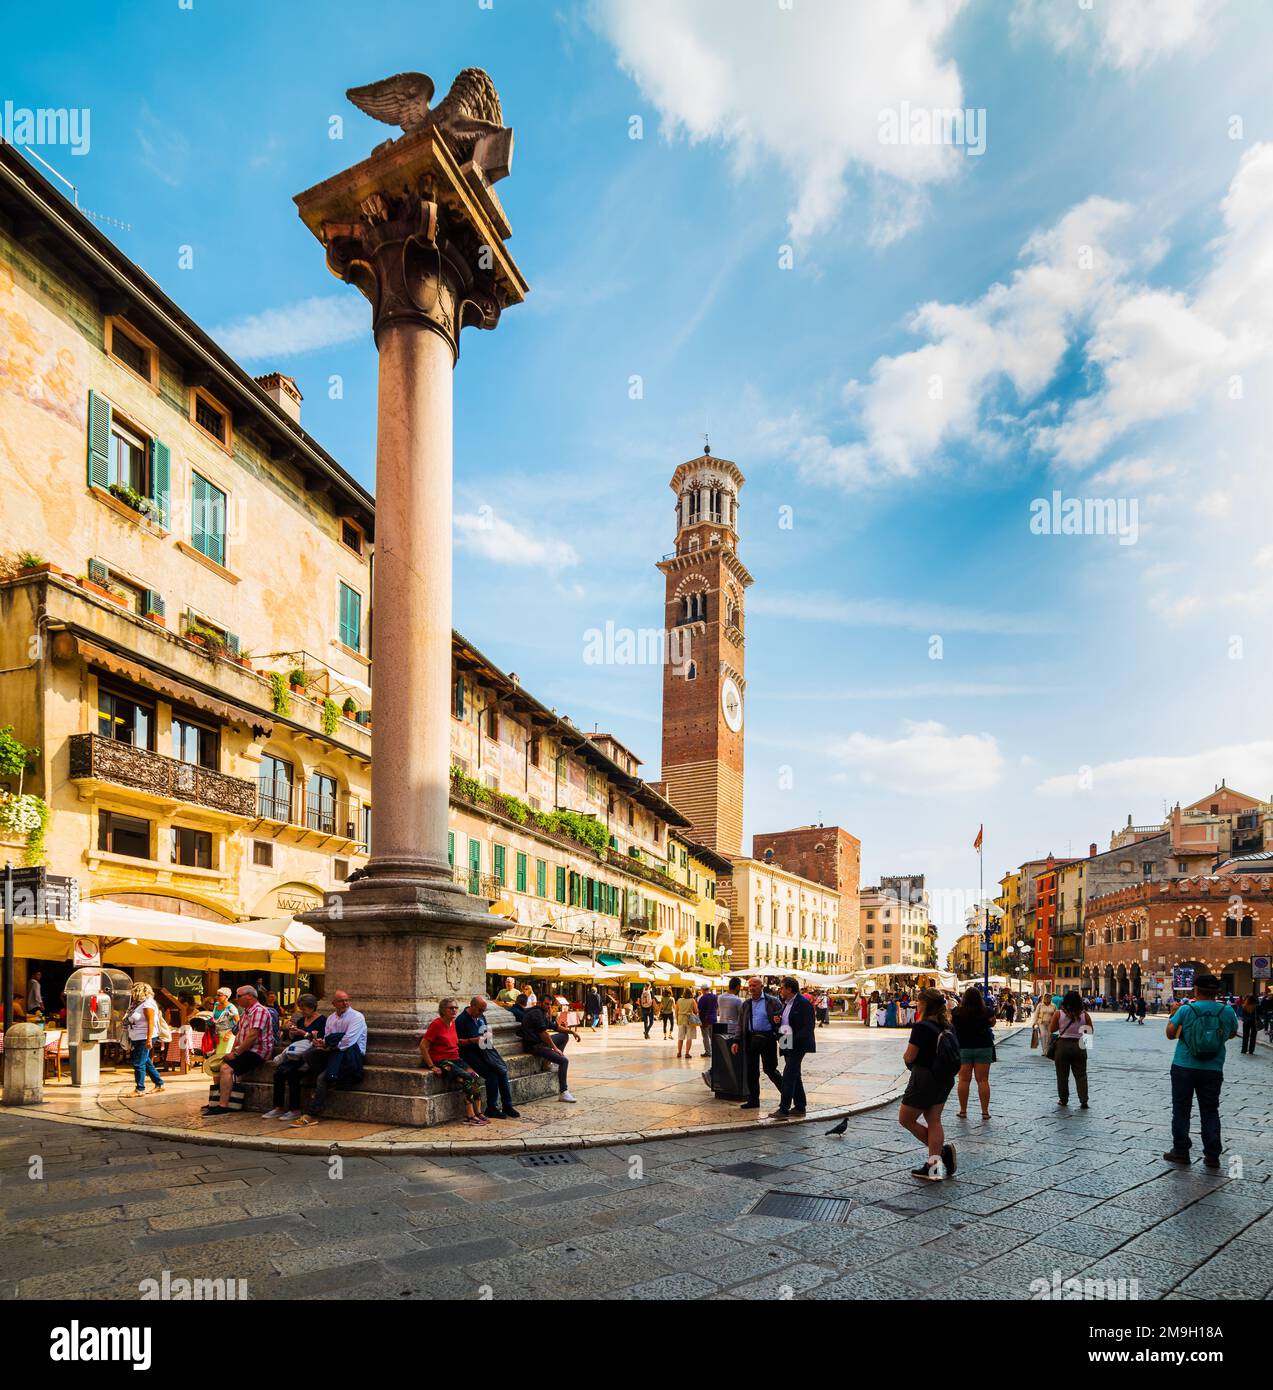 VERONA, 26 SETTEMBRE 2019: Piazza delle Erbe è una piazza di Verona. Lamberti Torre e colonna di San Marco. Foto Stock